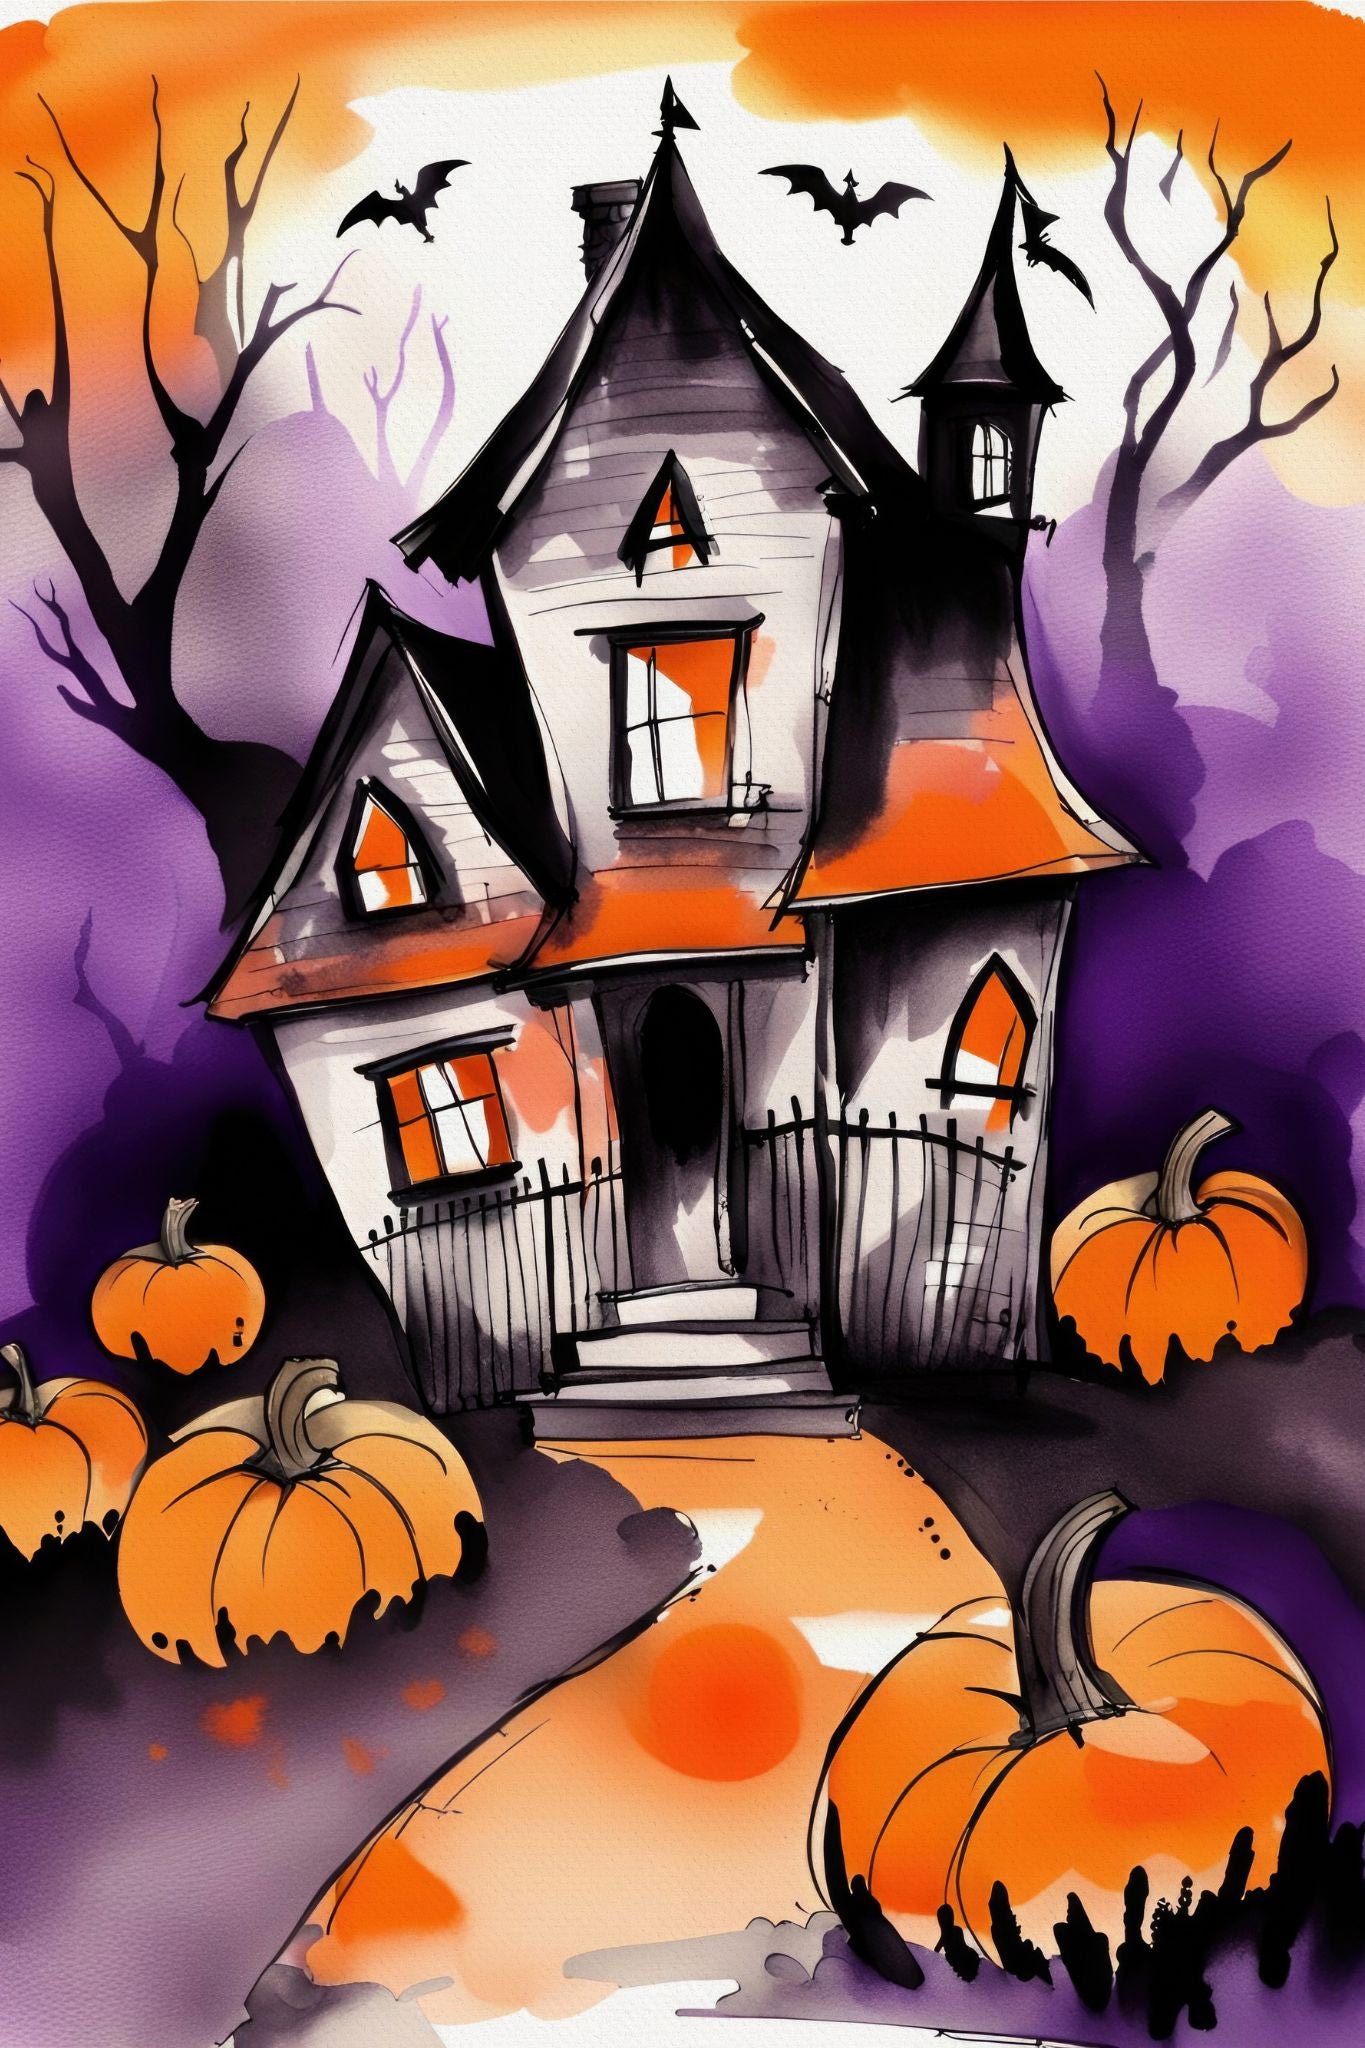 Creepy og kult halloweenkort. Motiv er i cartoon og forestiller et spøkelseshus